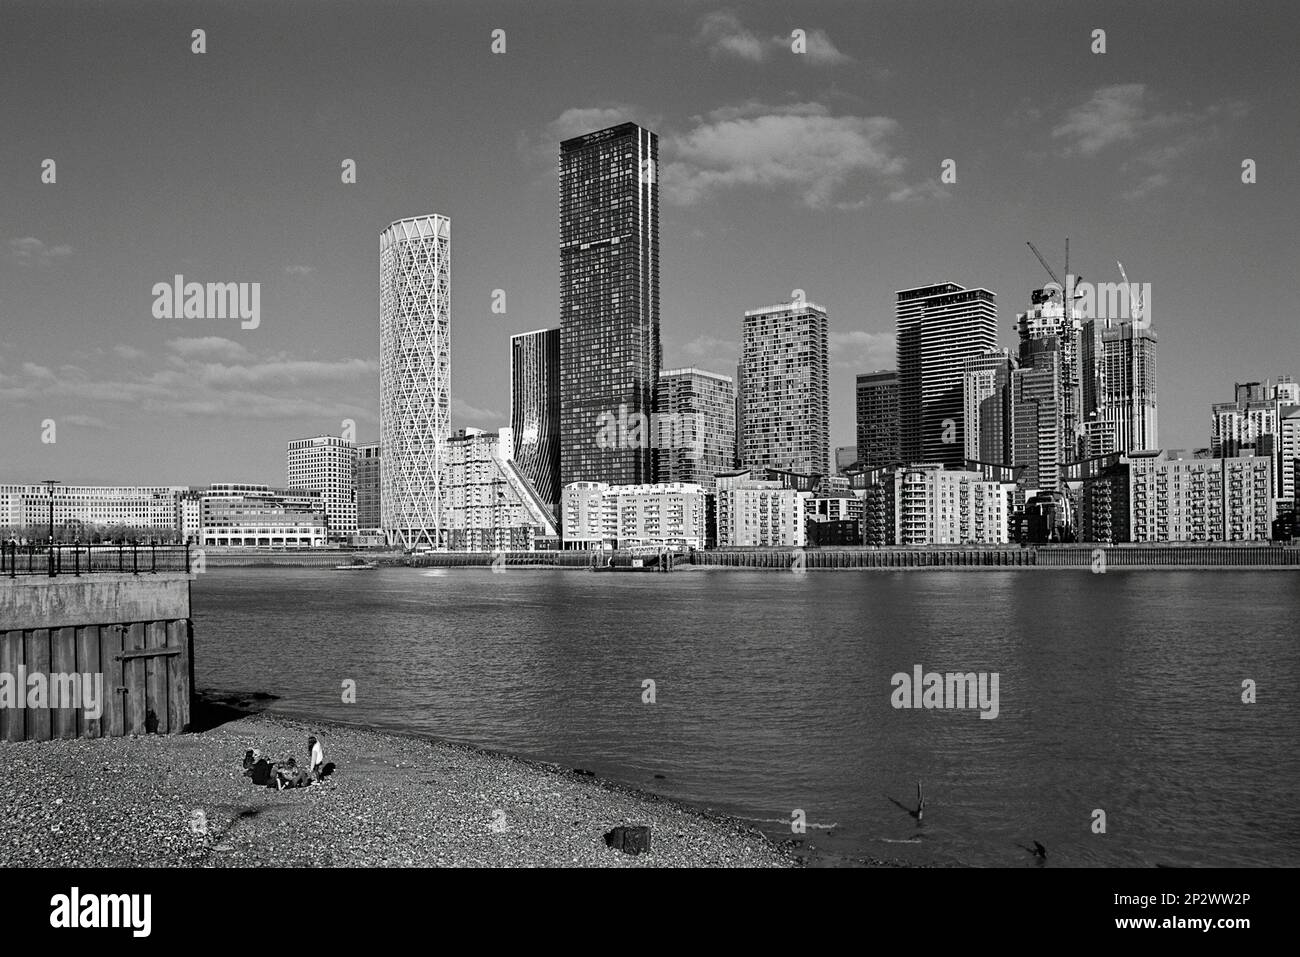 La rive sud de la Tamise en face de Canary Wharf, Londres UK, avec des gens sur la plage, en monochrome Banque D'Images